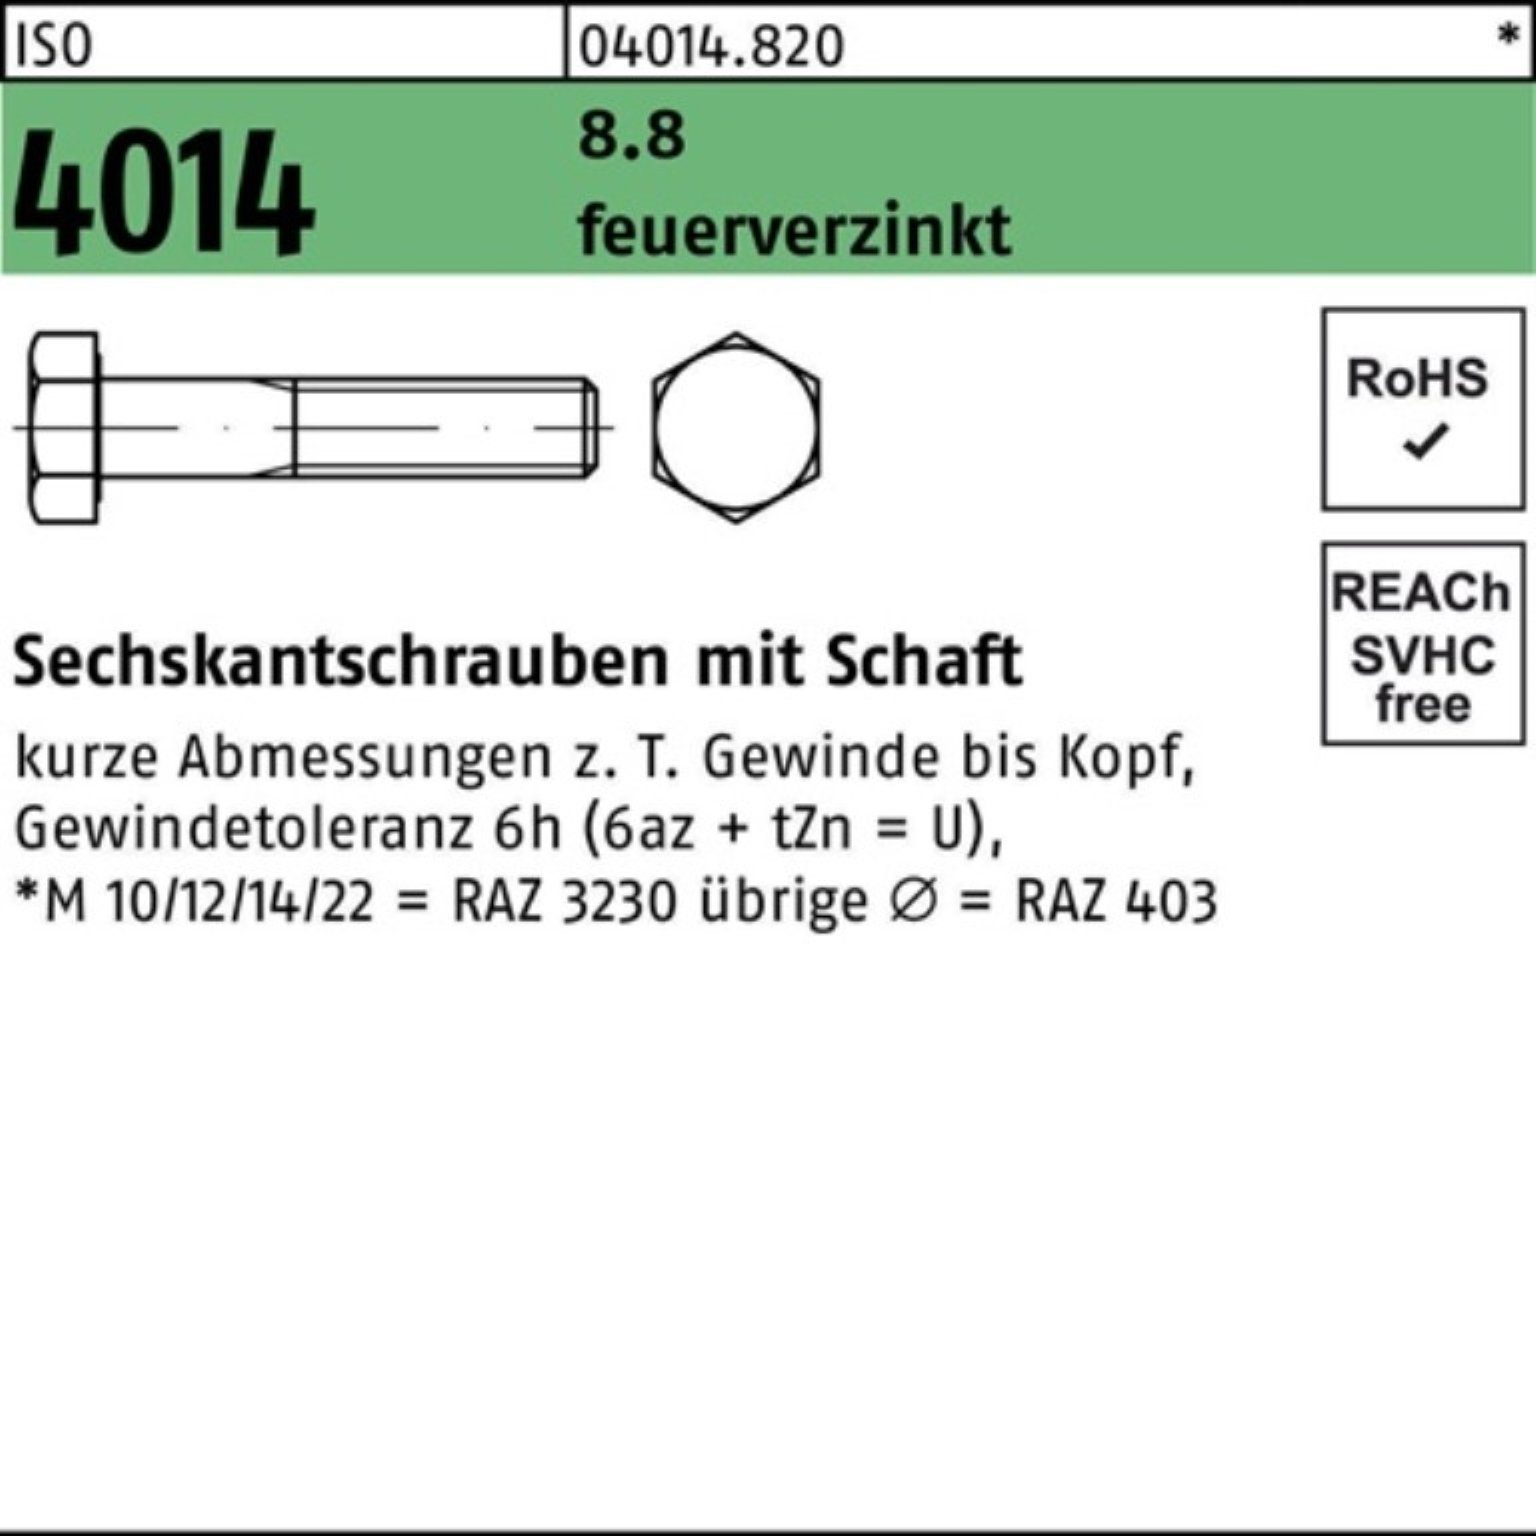 Bufab Sechskantschraube 100er Pack Sechskantschraube ISO 4014 Schaft M30x 180 8.8 feuerverz. 1